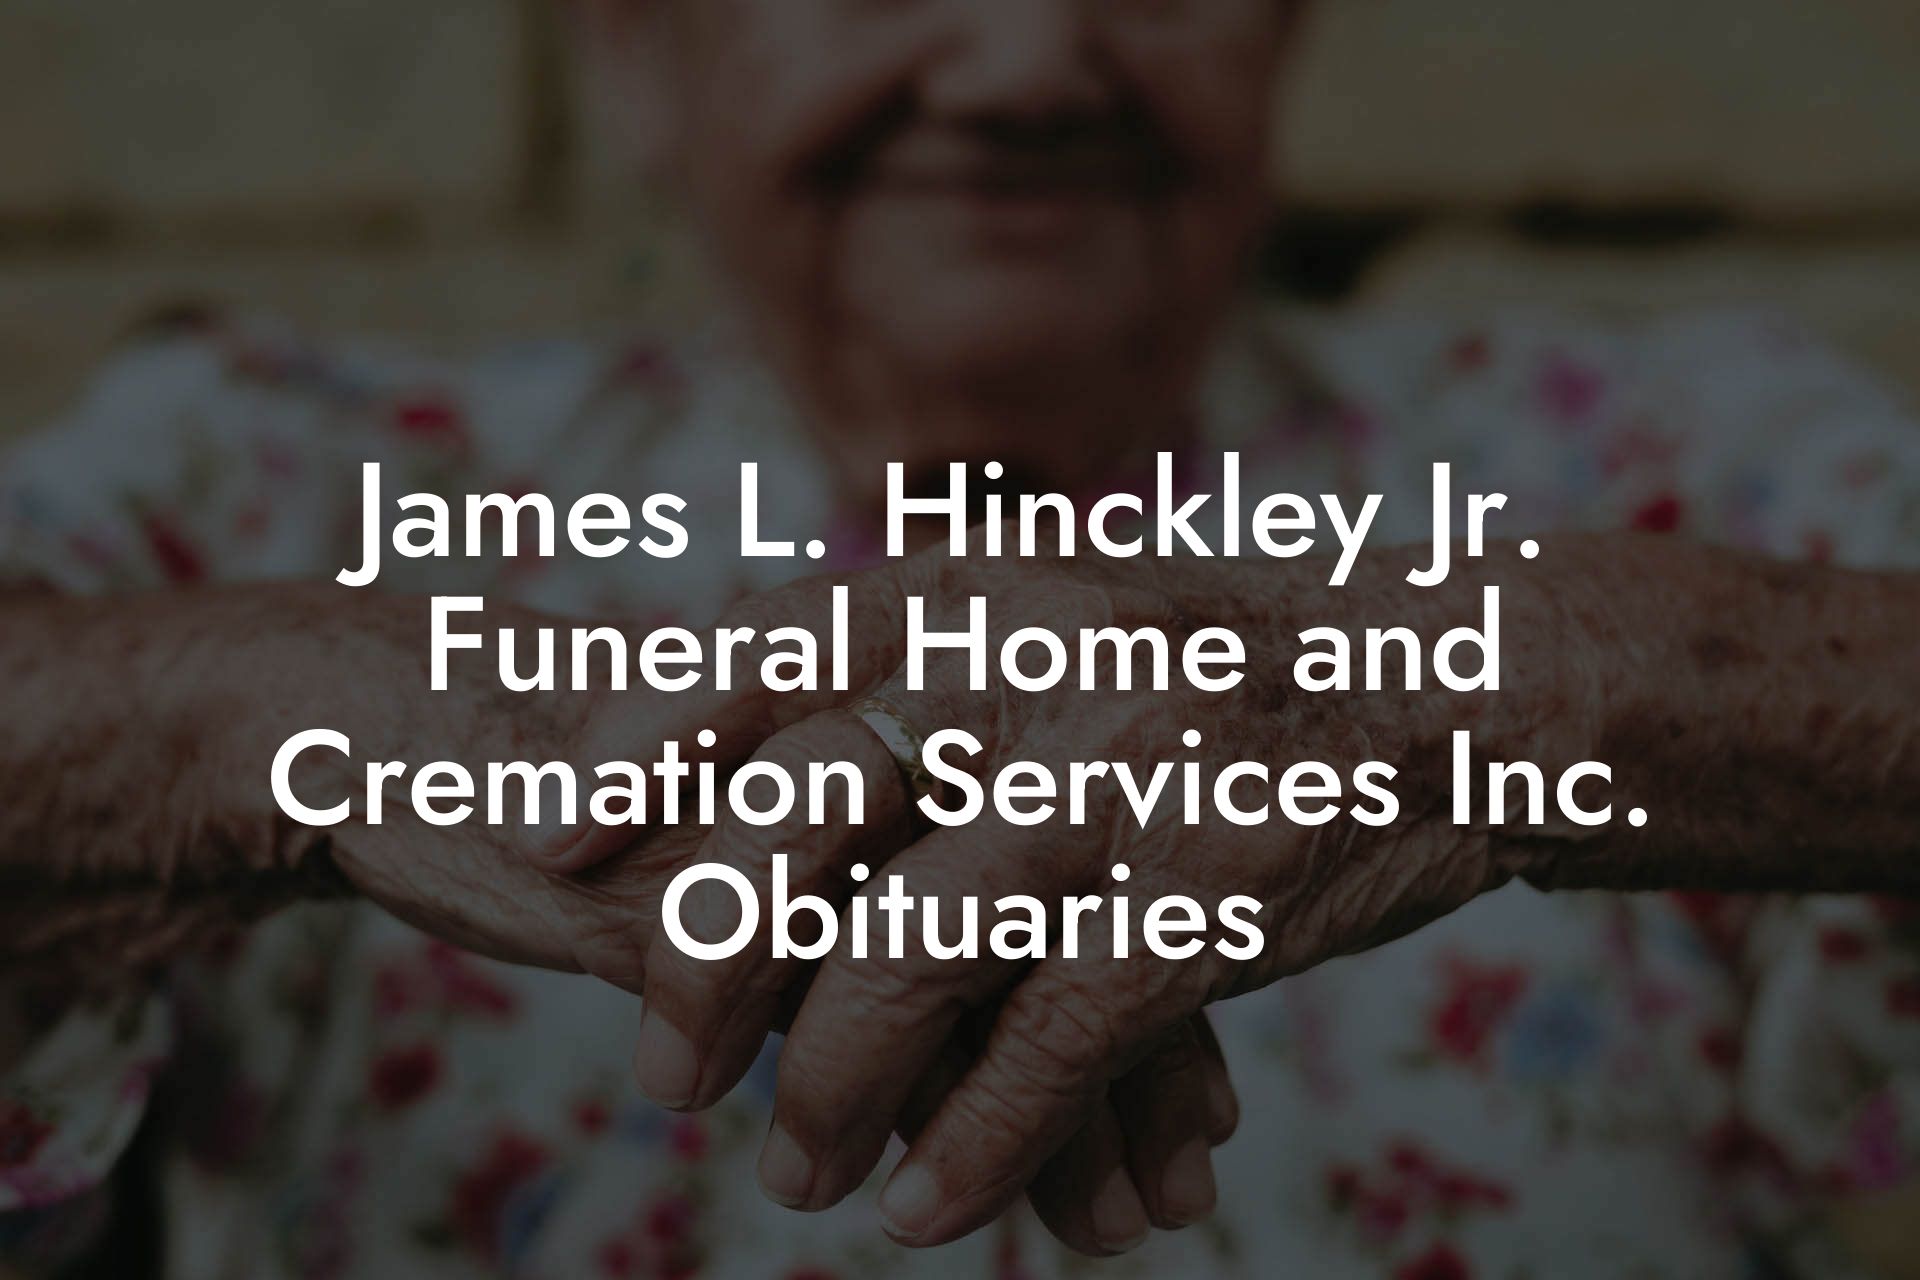 James L. Hinckley Jr. Funeral Home and Cremation Services Inc. Obituaries